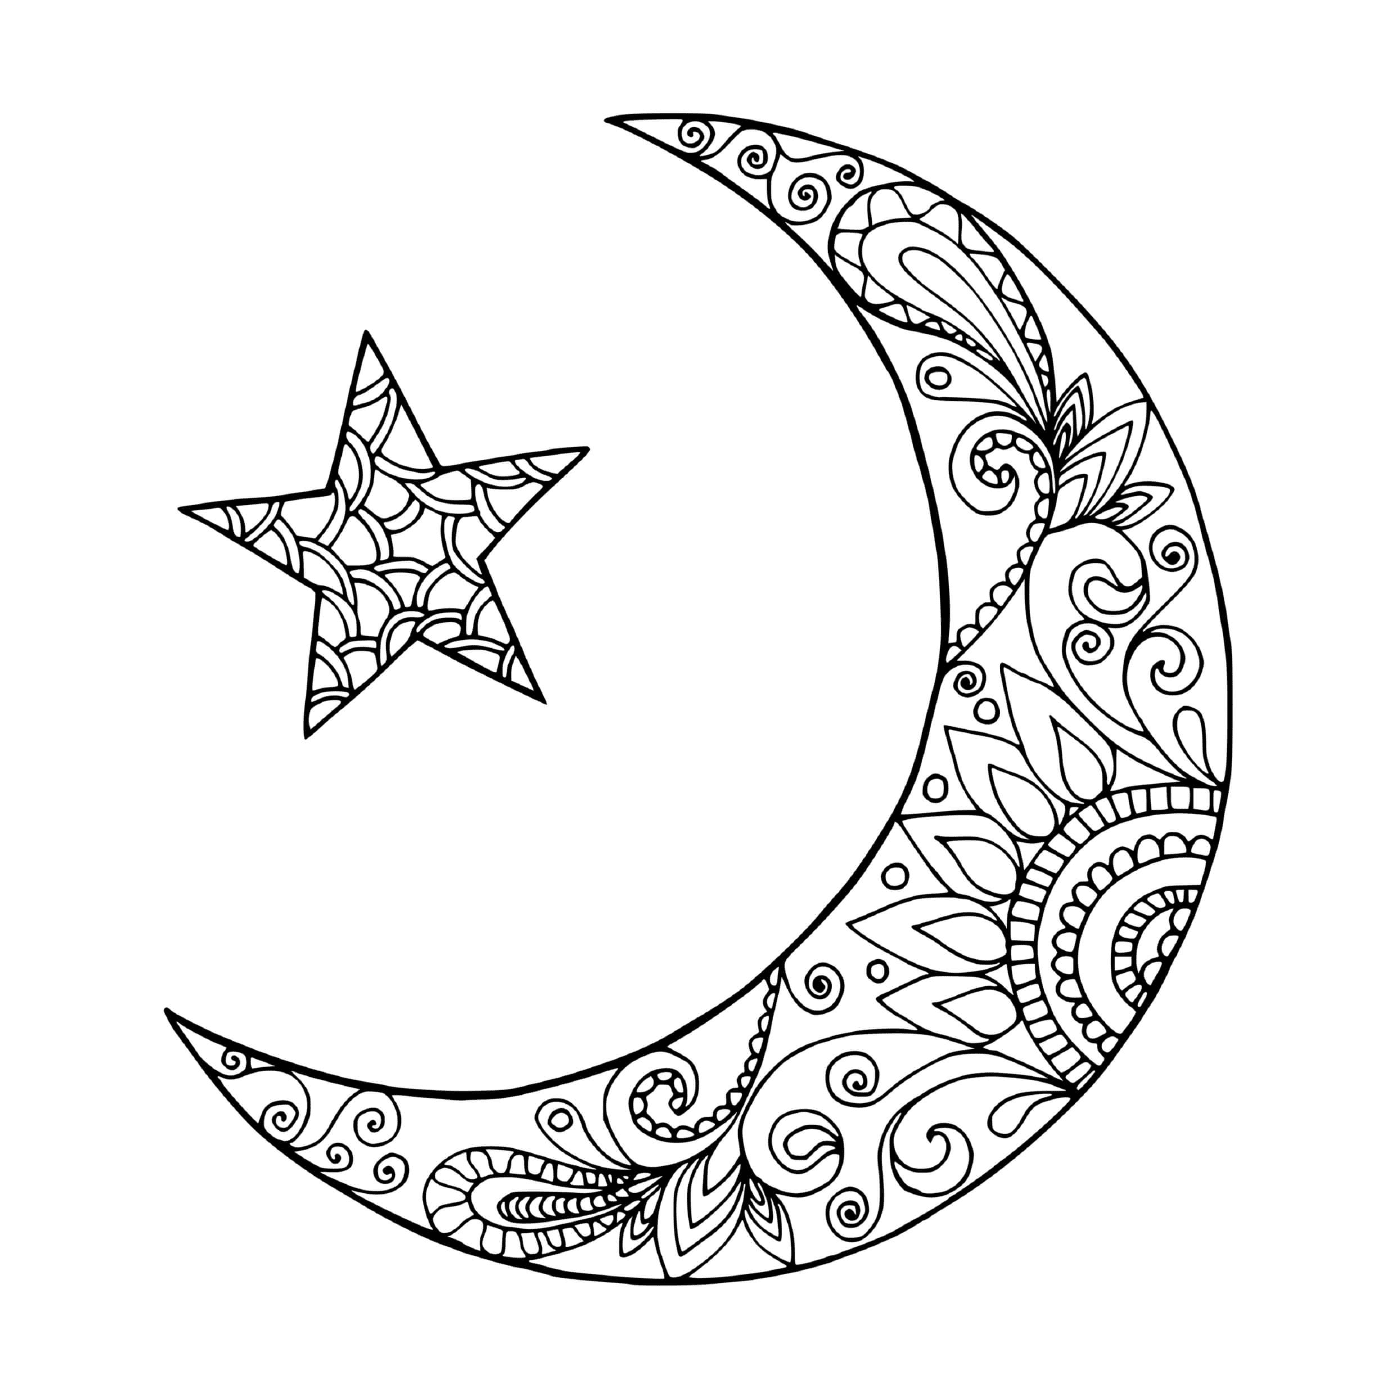  Луна в форме полумесяца и звезды 